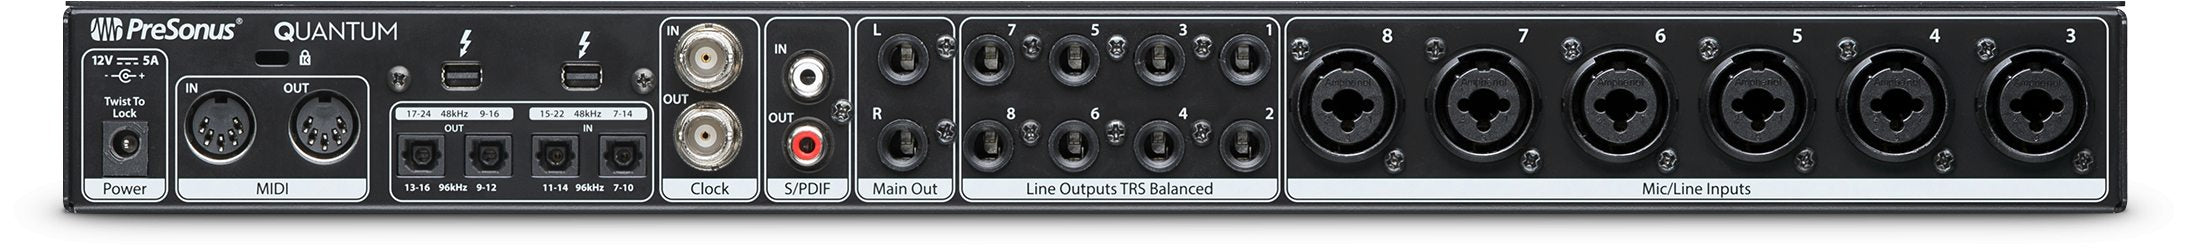 PreSonus Quantum 26 x 32 Thunderbolt™ 2 Audio Interface/Studio Command Center Back View